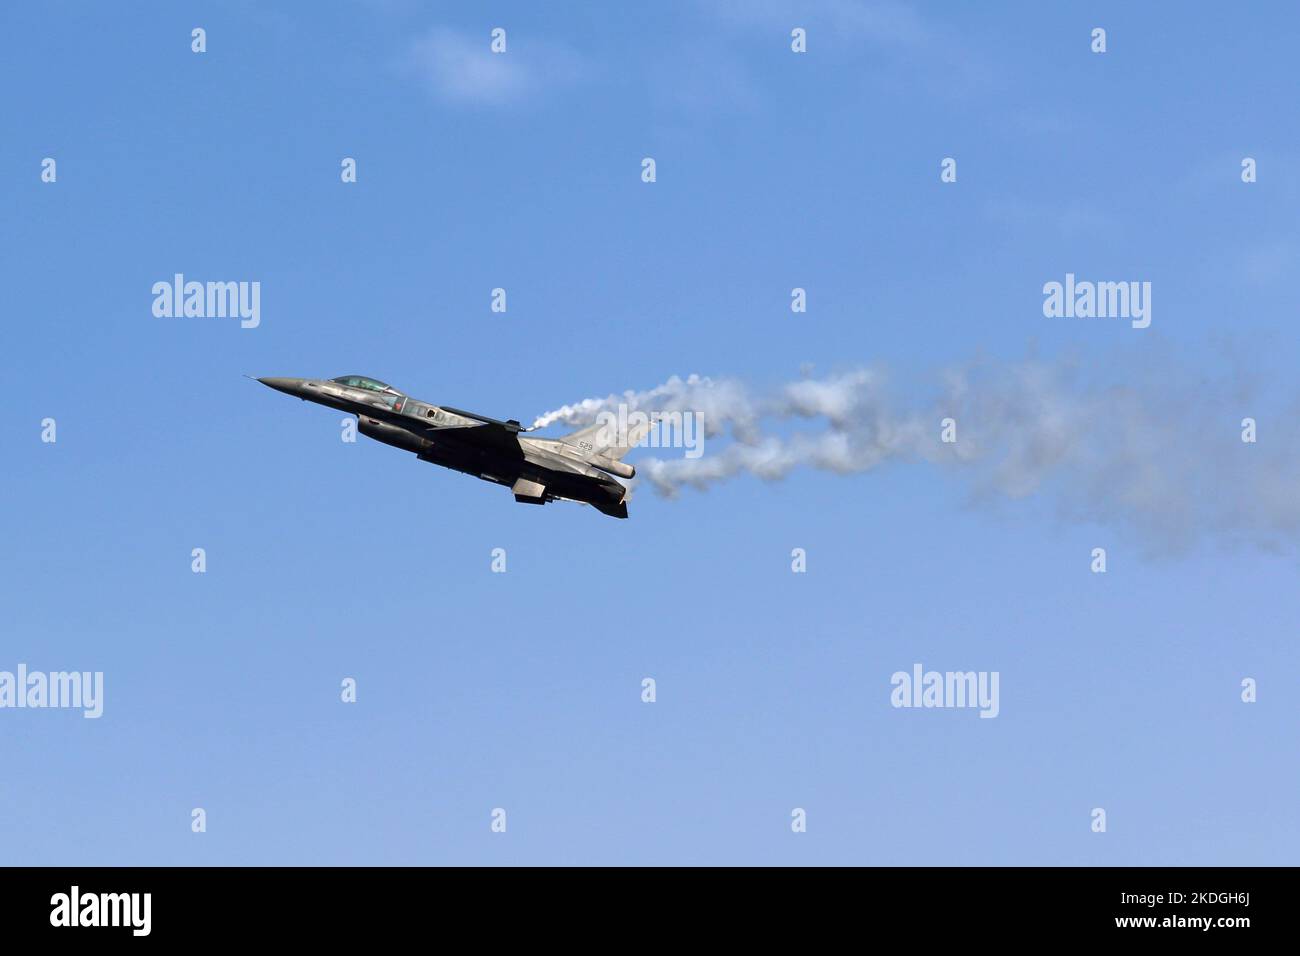 Kleine Brogel, Belgien - 09. Sep. 2018: Militärflugzeug fliegt auf einer Flugschau in kleine Brogel, Belgien. F-16 griechische Luftwaffe. Stockfoto